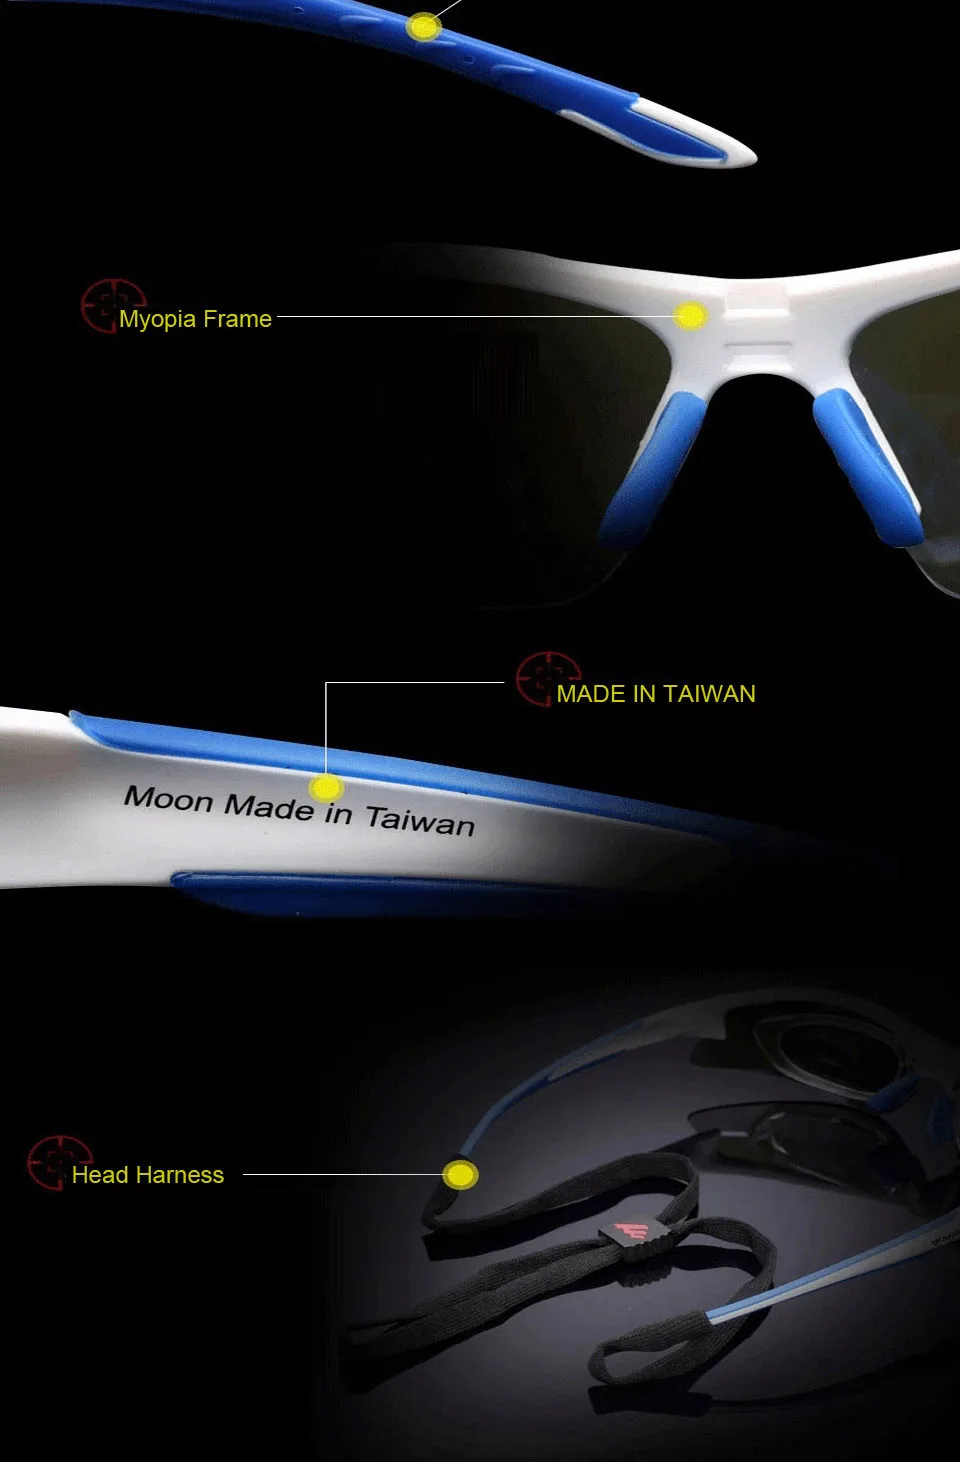 Велосипедные очки для спорта на открытом воздухе, велосипедные солнцезащитные очки для горной дороги, велосипеда, очки для велосипеда TR90, очки UV400 Oculos Ciclismo